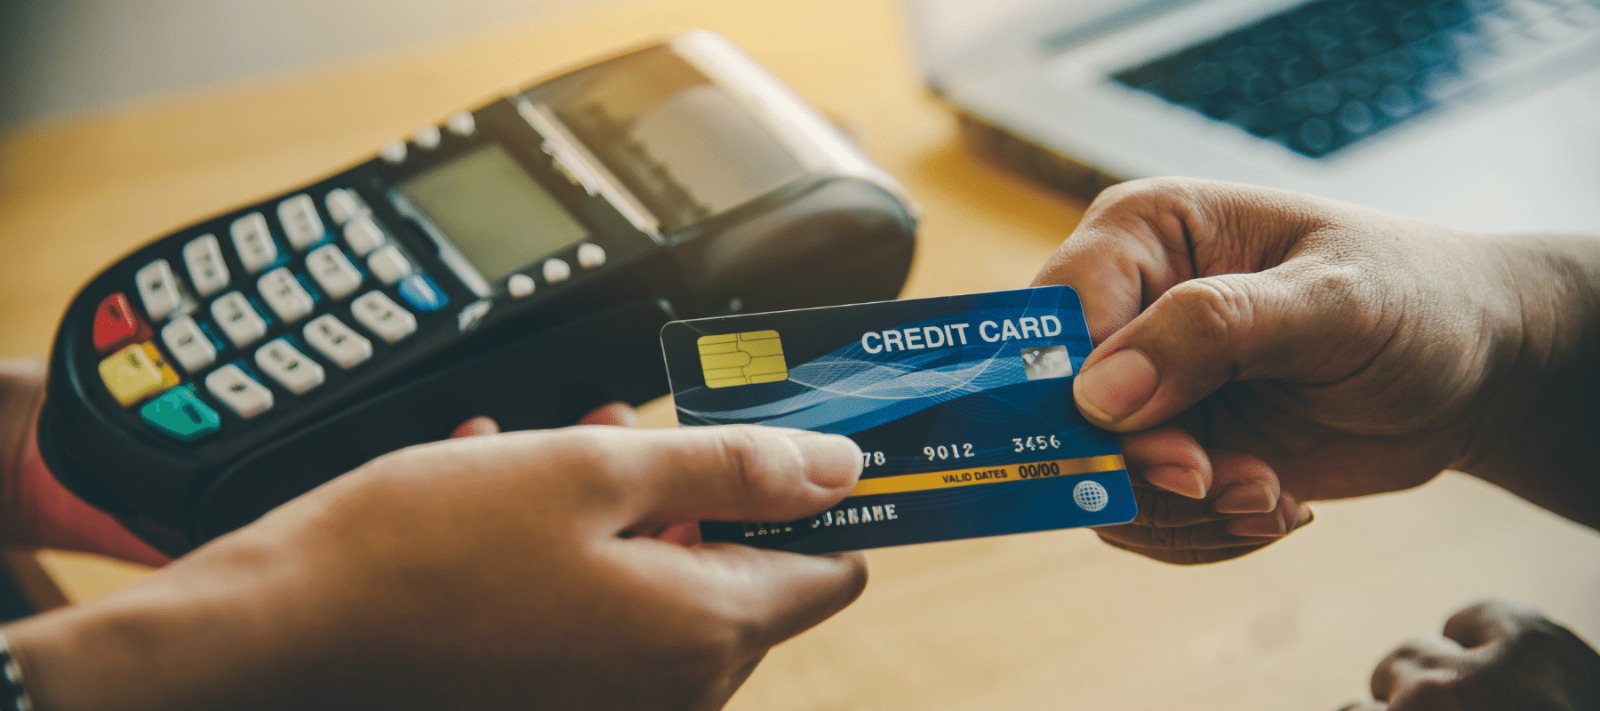 Get instant cash against credit cards online